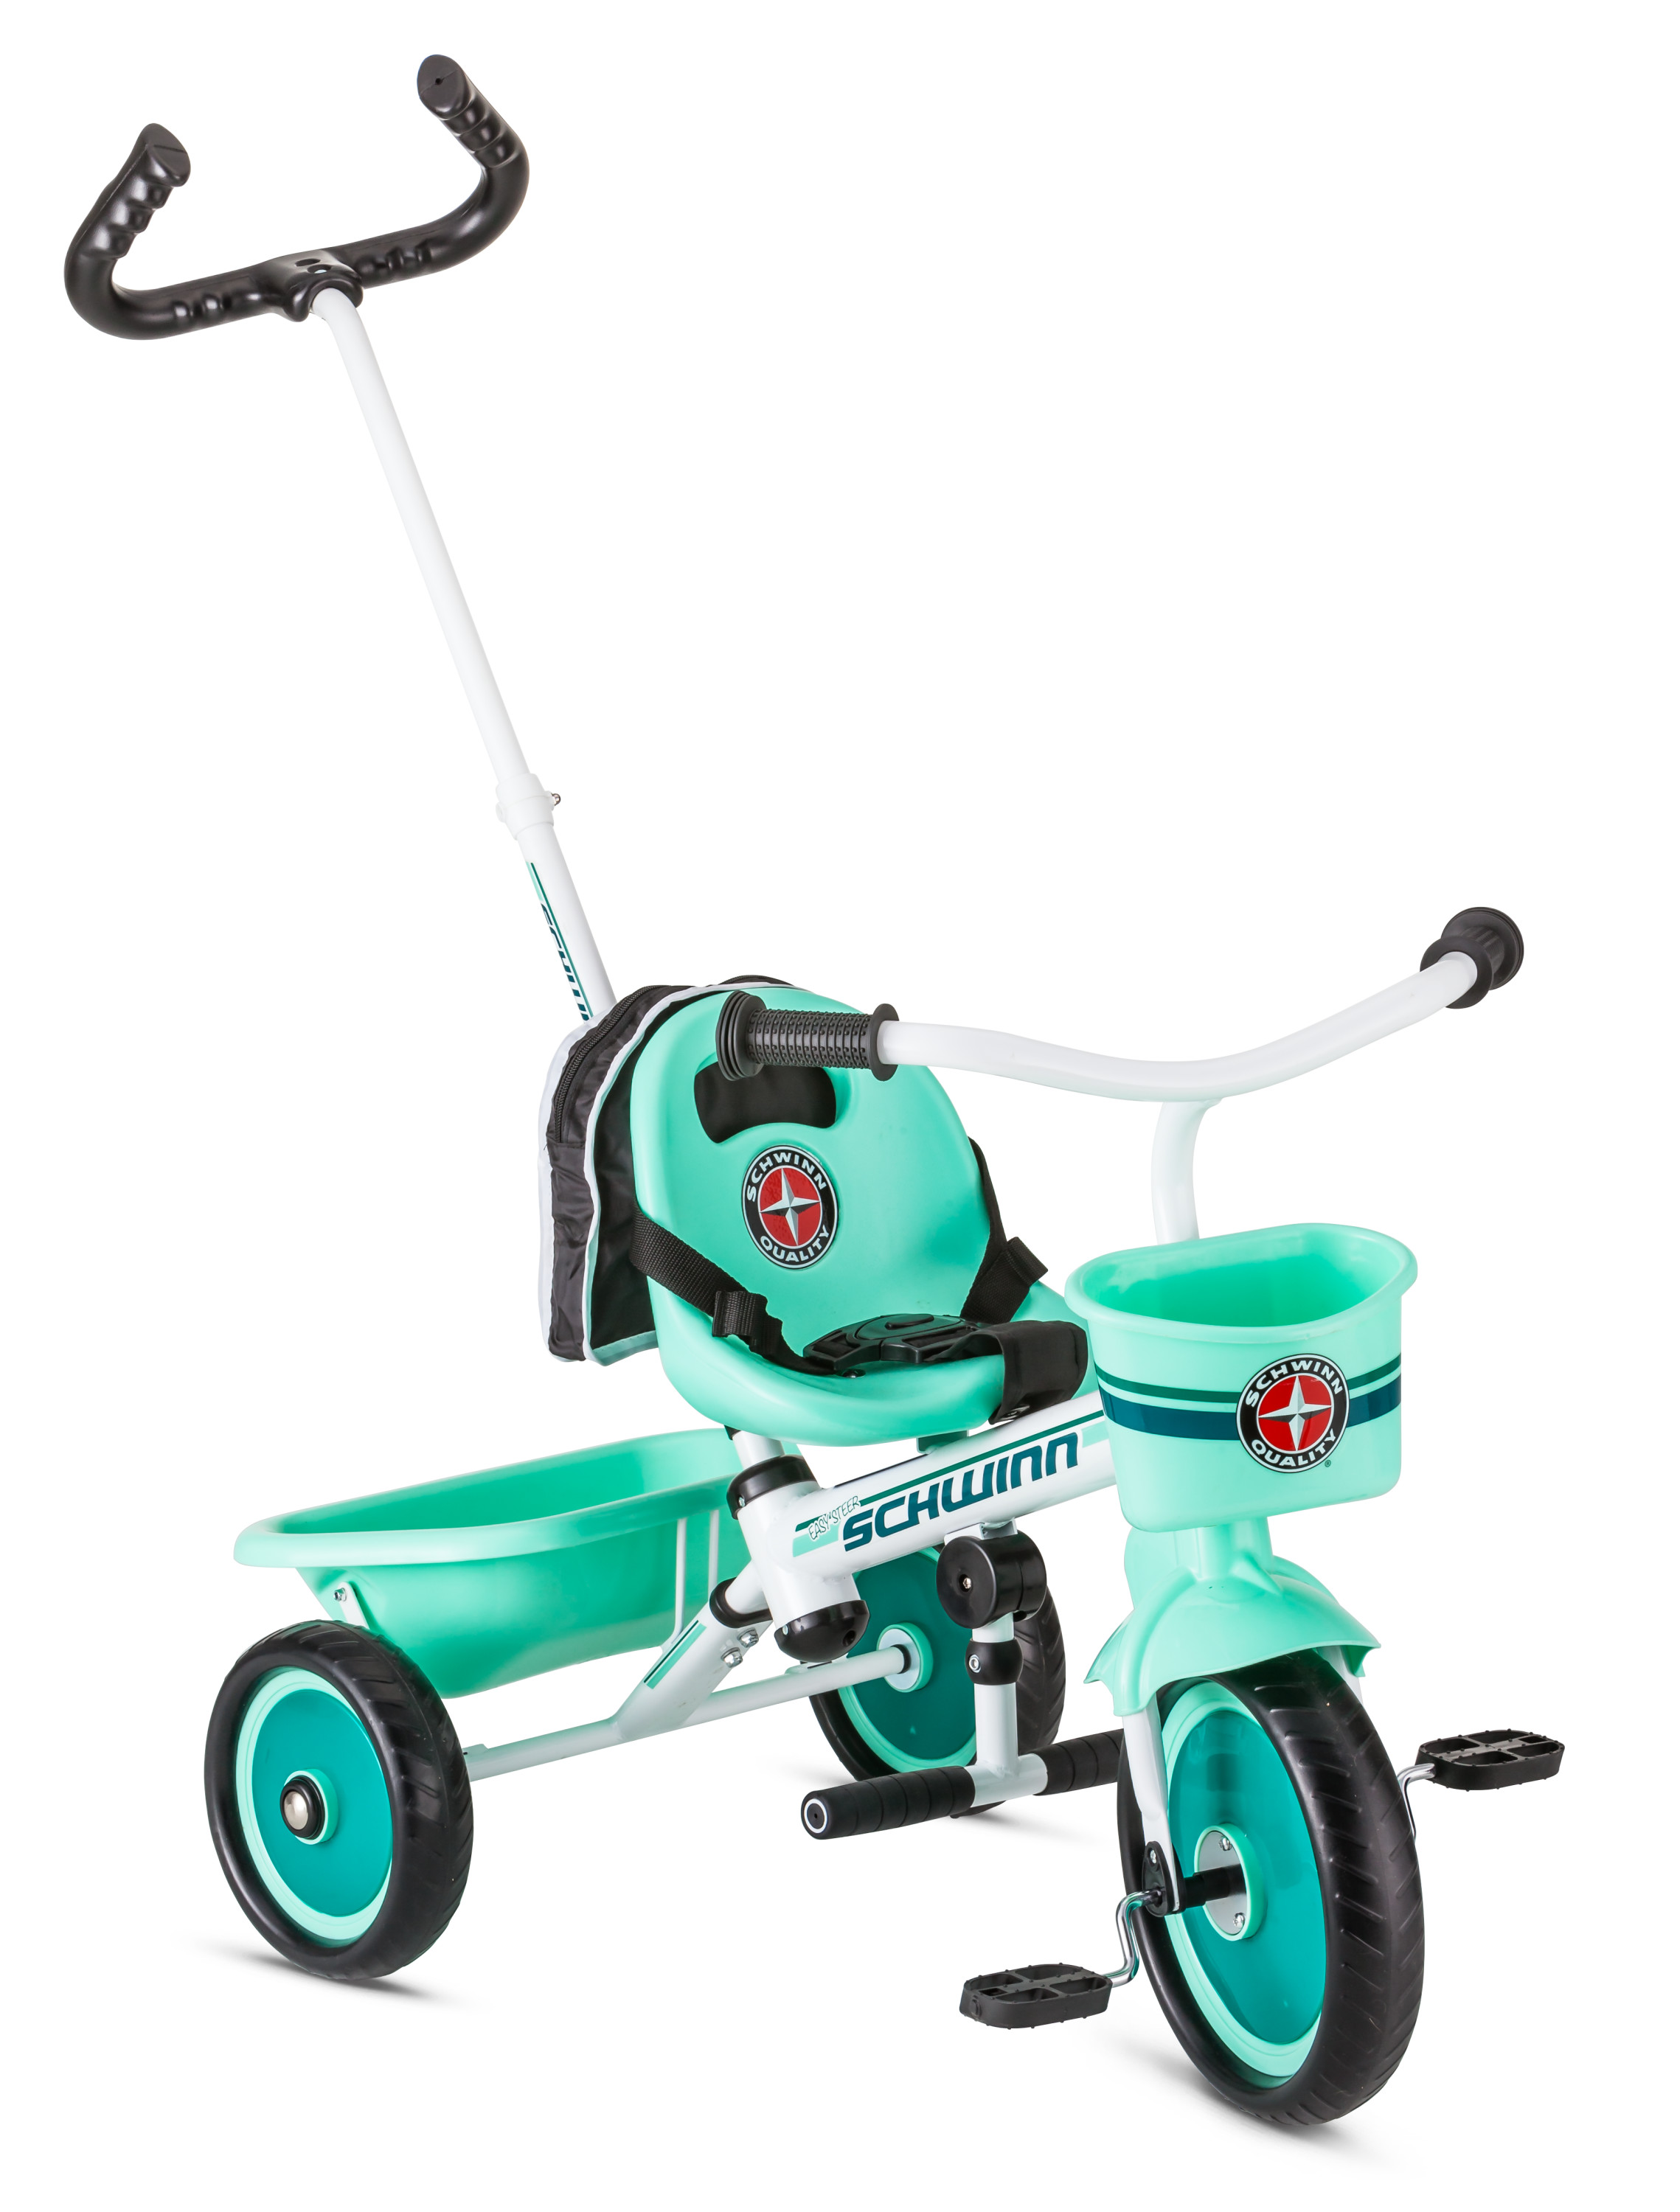 Schwinn Easy-Steer Tricycle with Push/Steer Handle, ages 2 - 4, teal, toddler bike - image 3 of 9